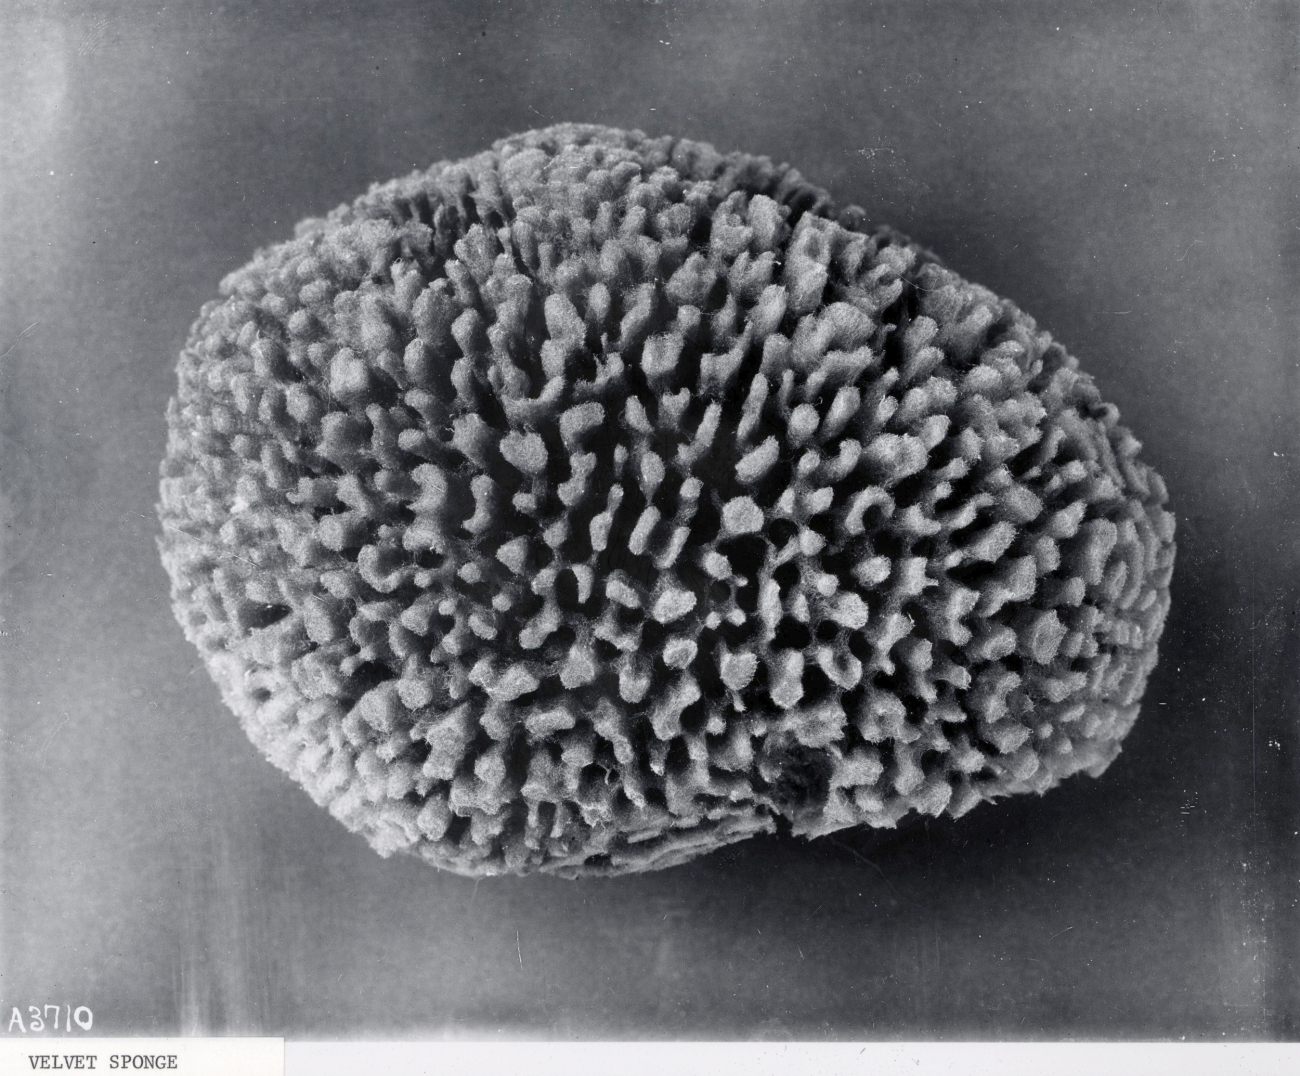 Velvet sponge - specimen from Bahamas